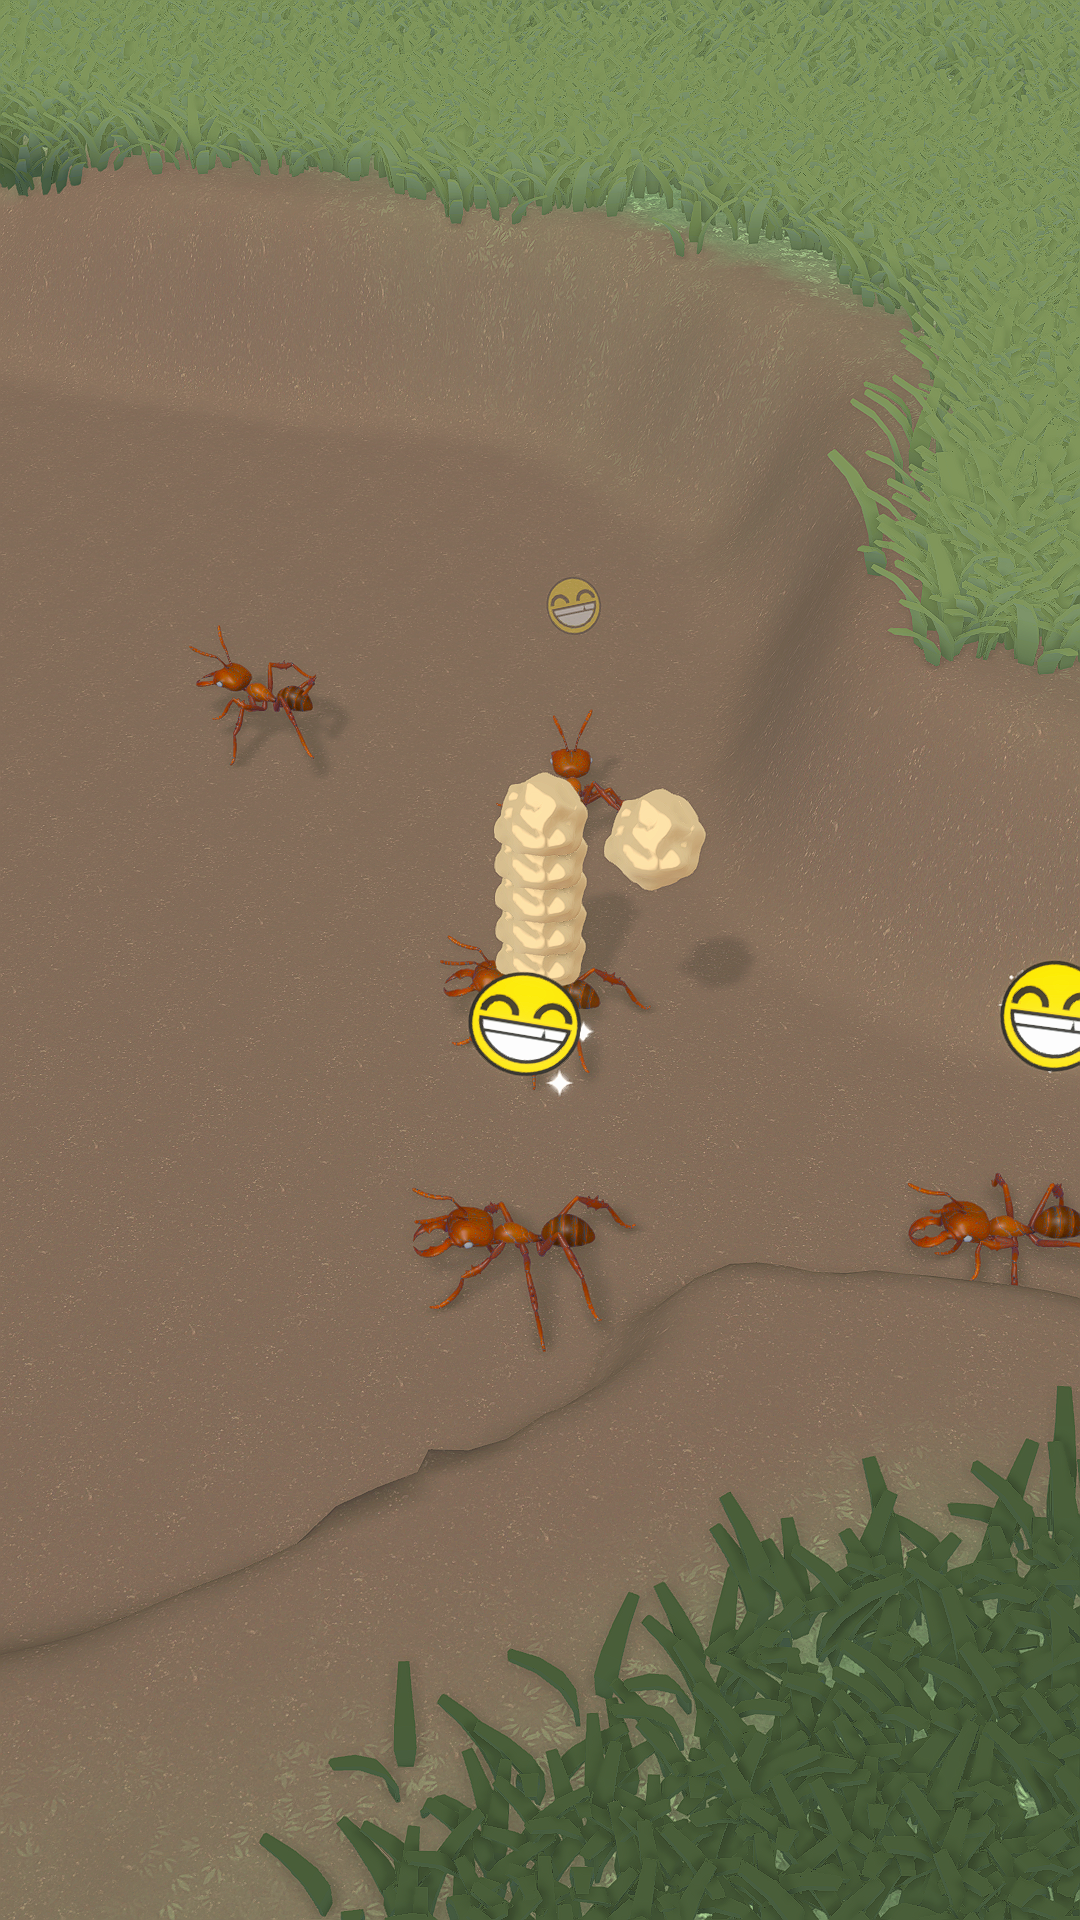 Ant Colony Adventure遊戲截圖